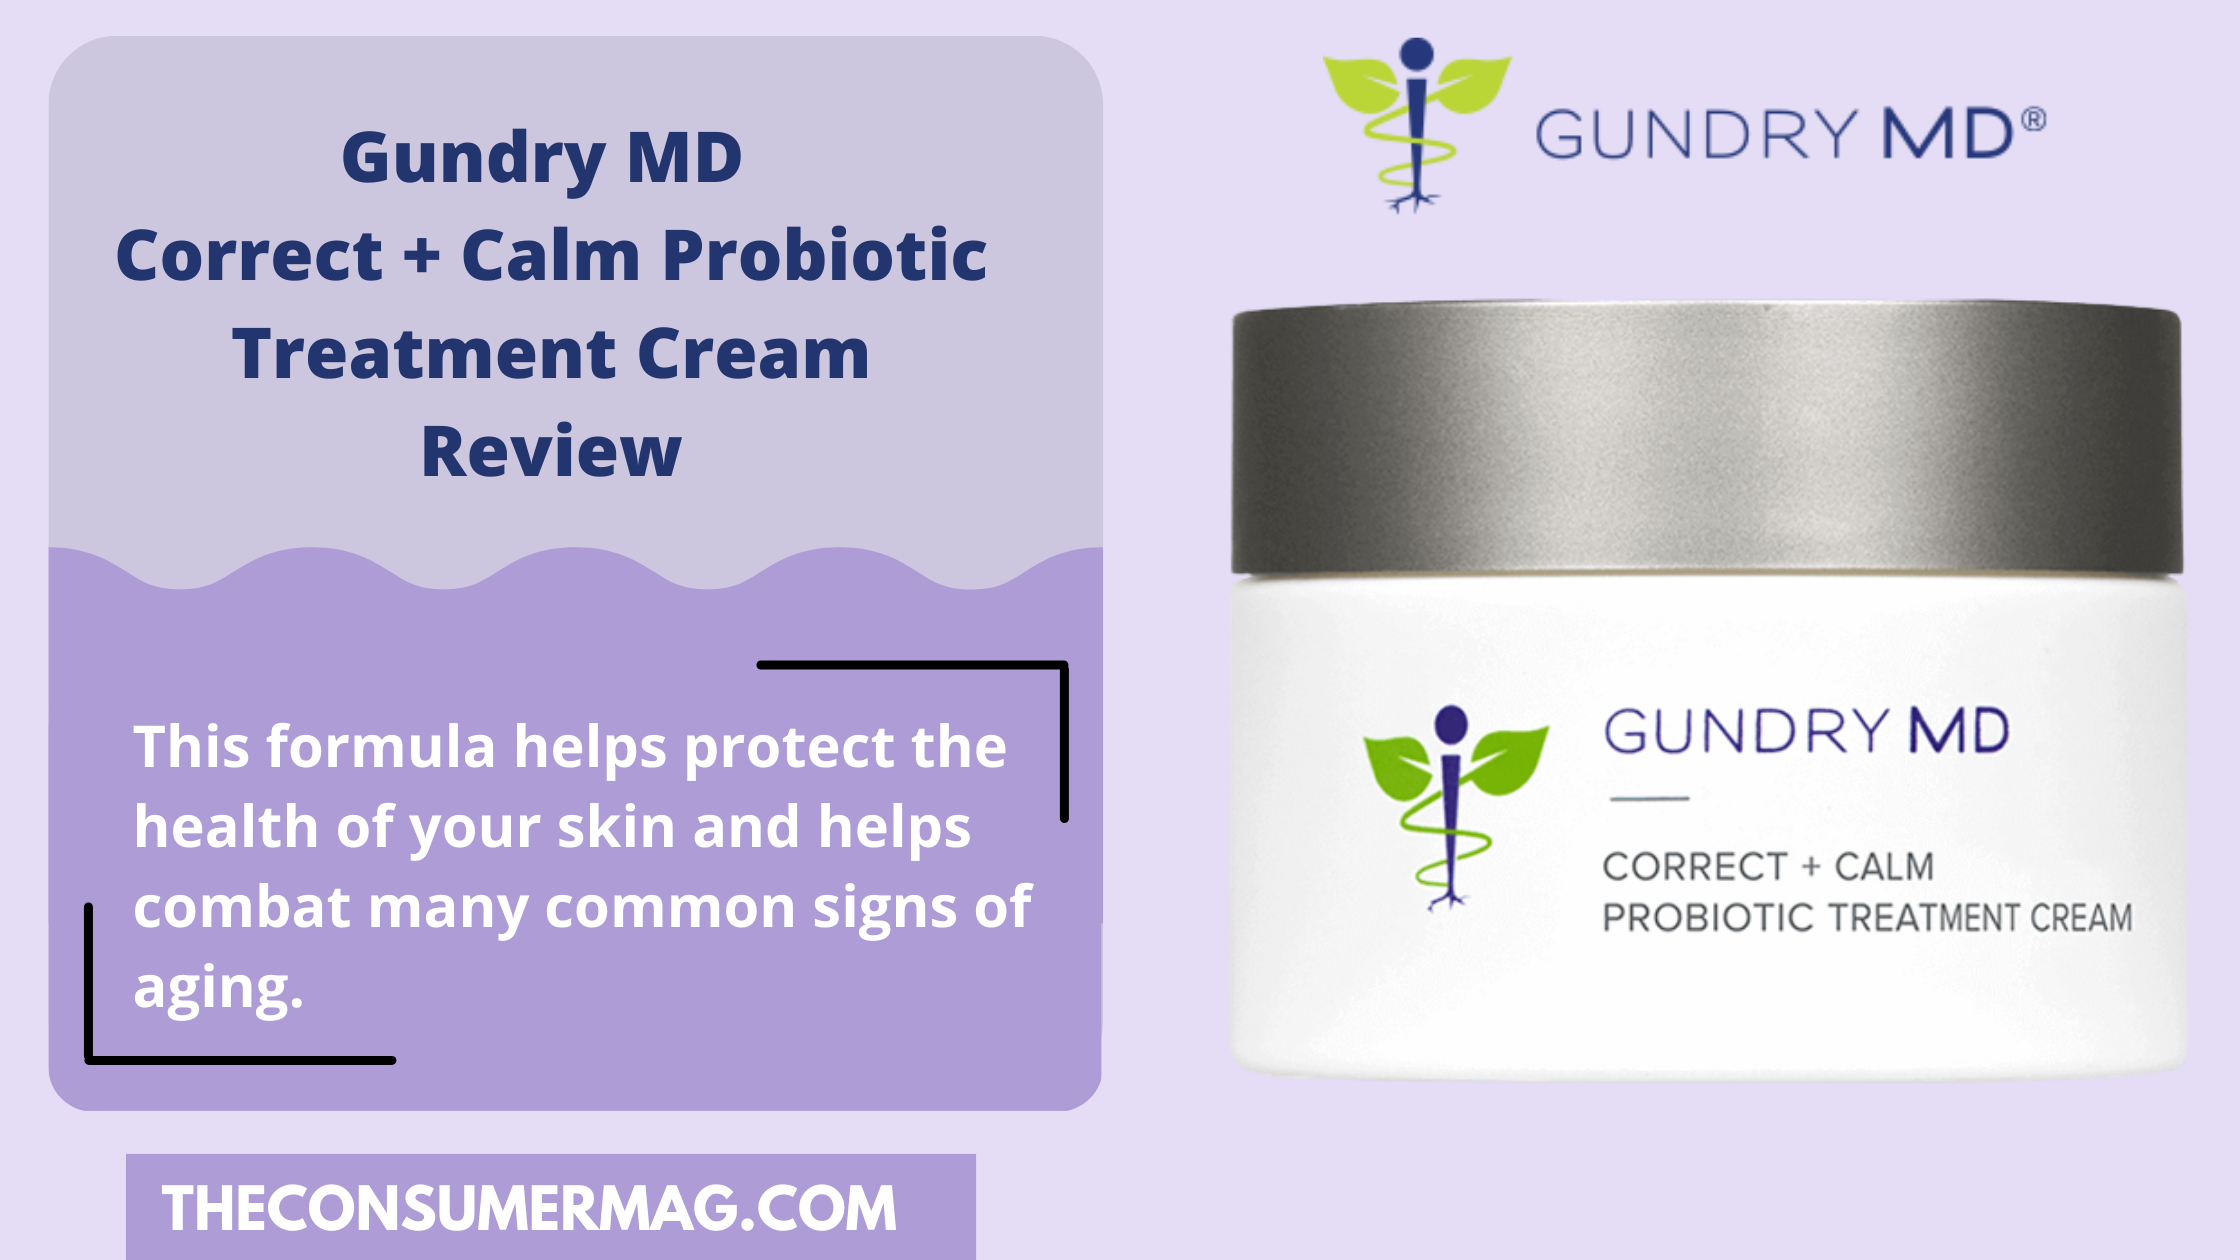 Correct Calm Probiotic Treatment Cream featured image